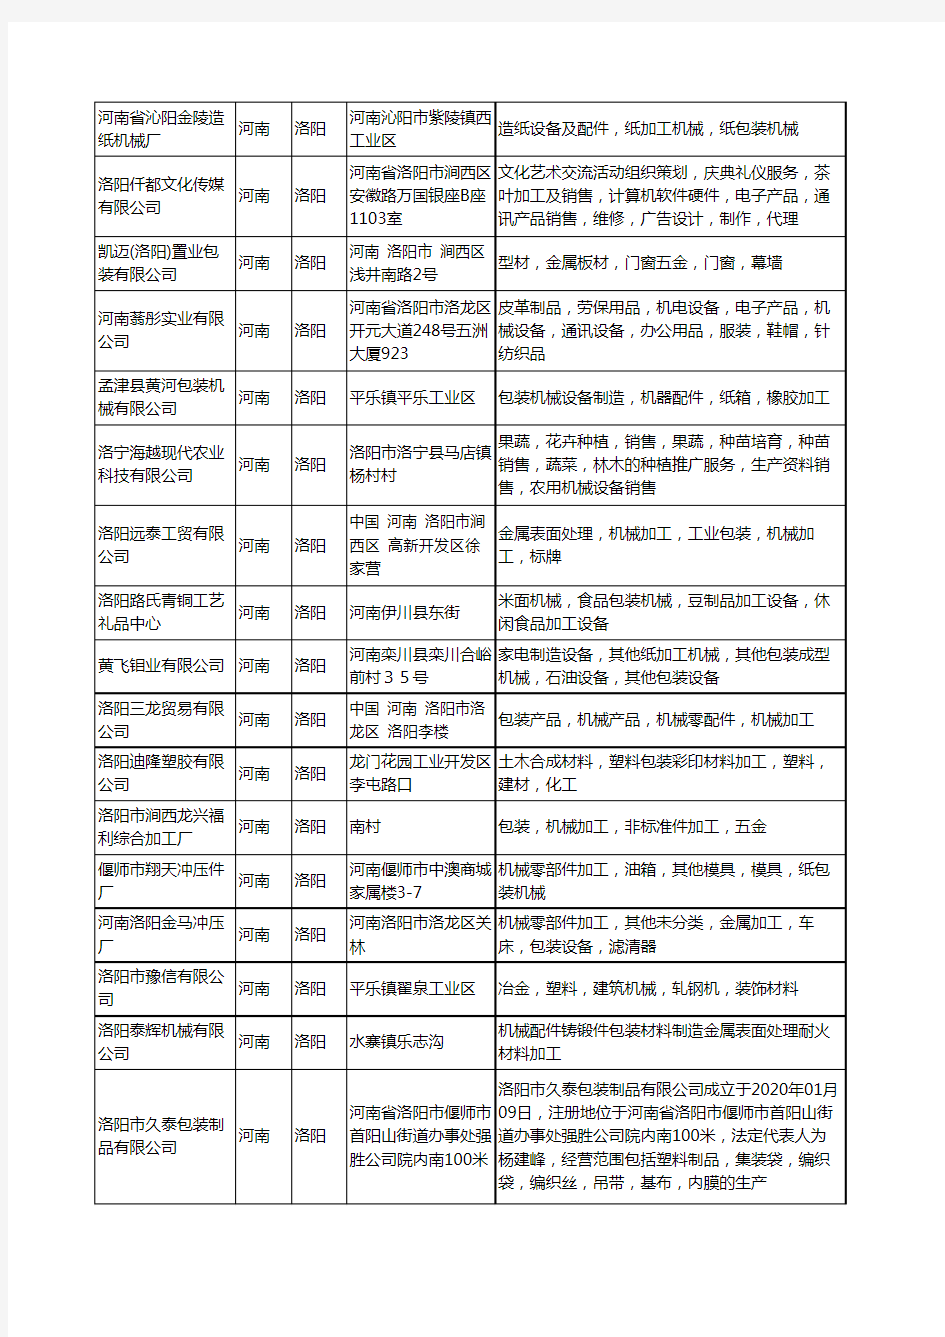 新版河南省包装机械加工工商企业公司商家名录名单联系方式大全55家